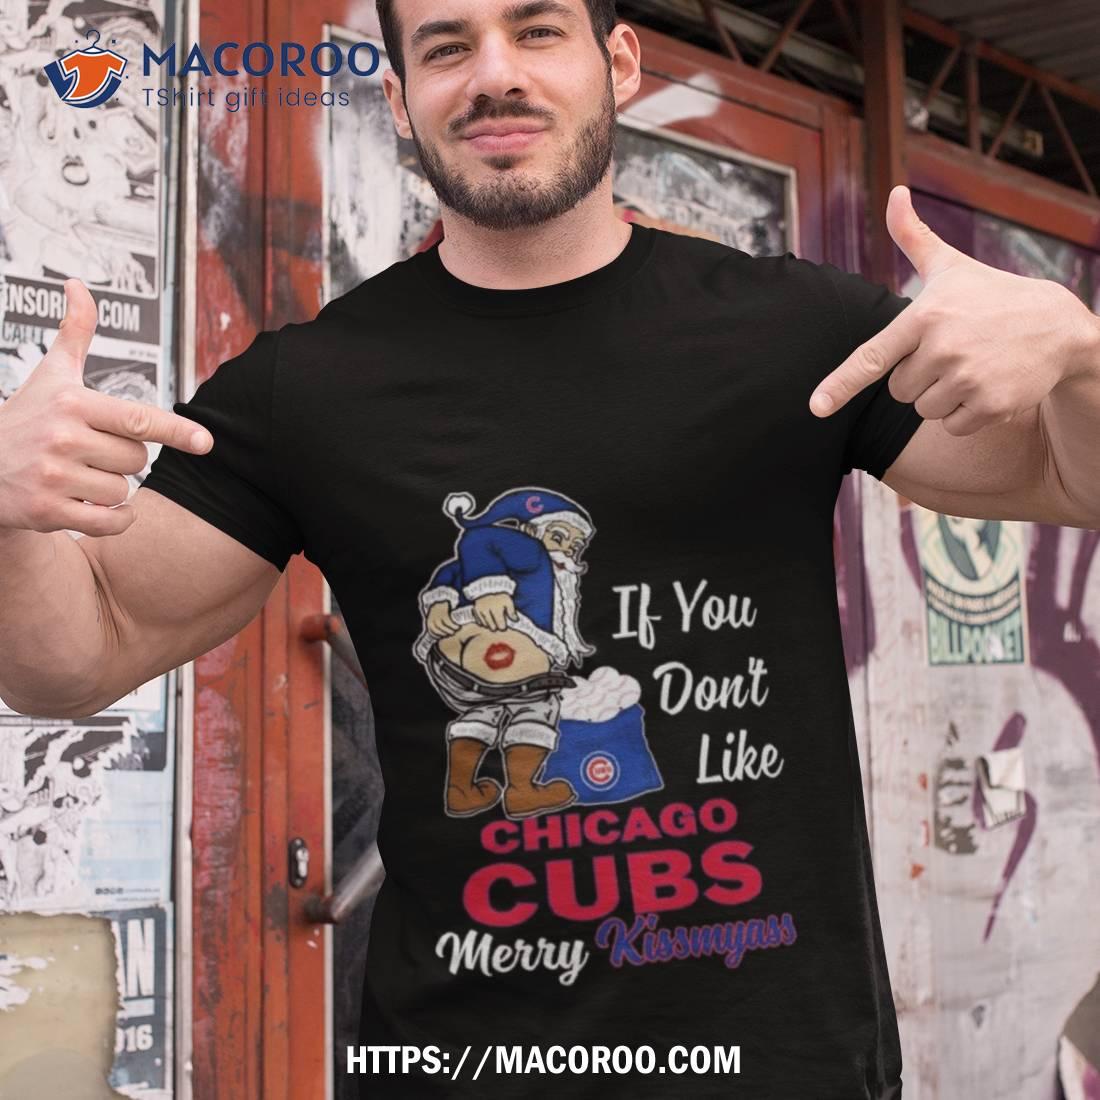 Kiss: Chicago Cubs T-Shirt